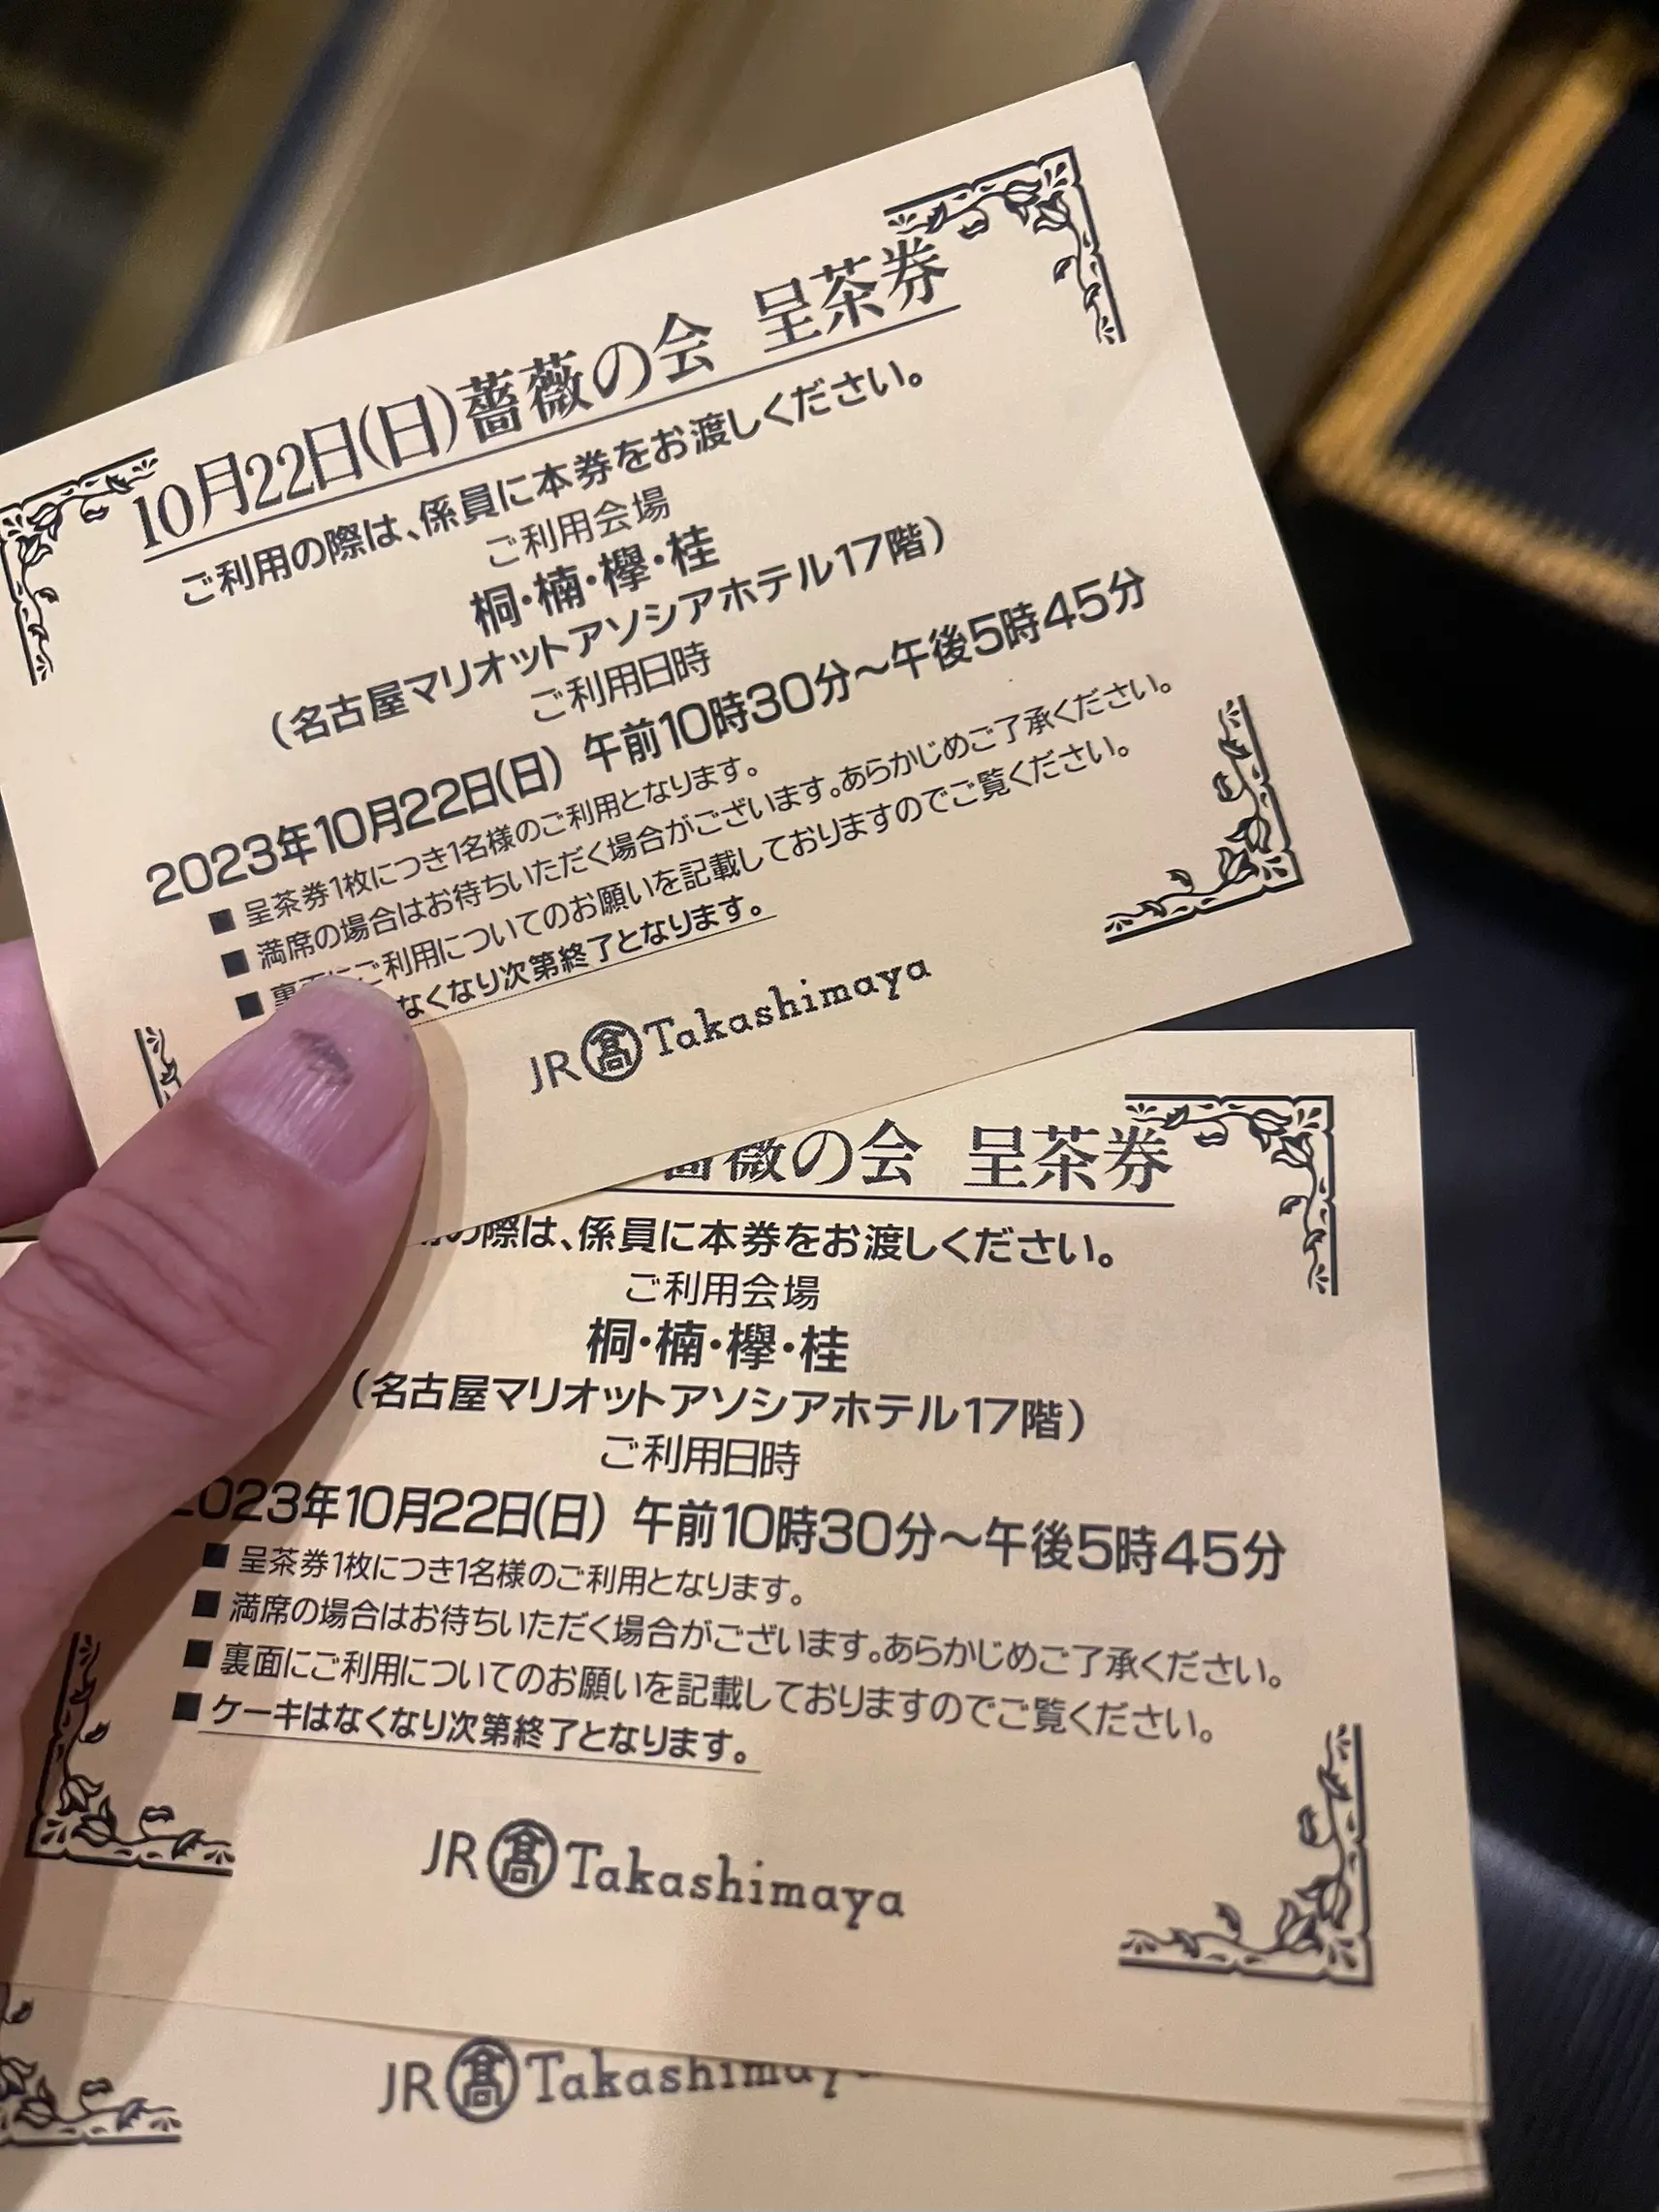 マリオット名古屋アソシア ディナー食事券 - ショッピング